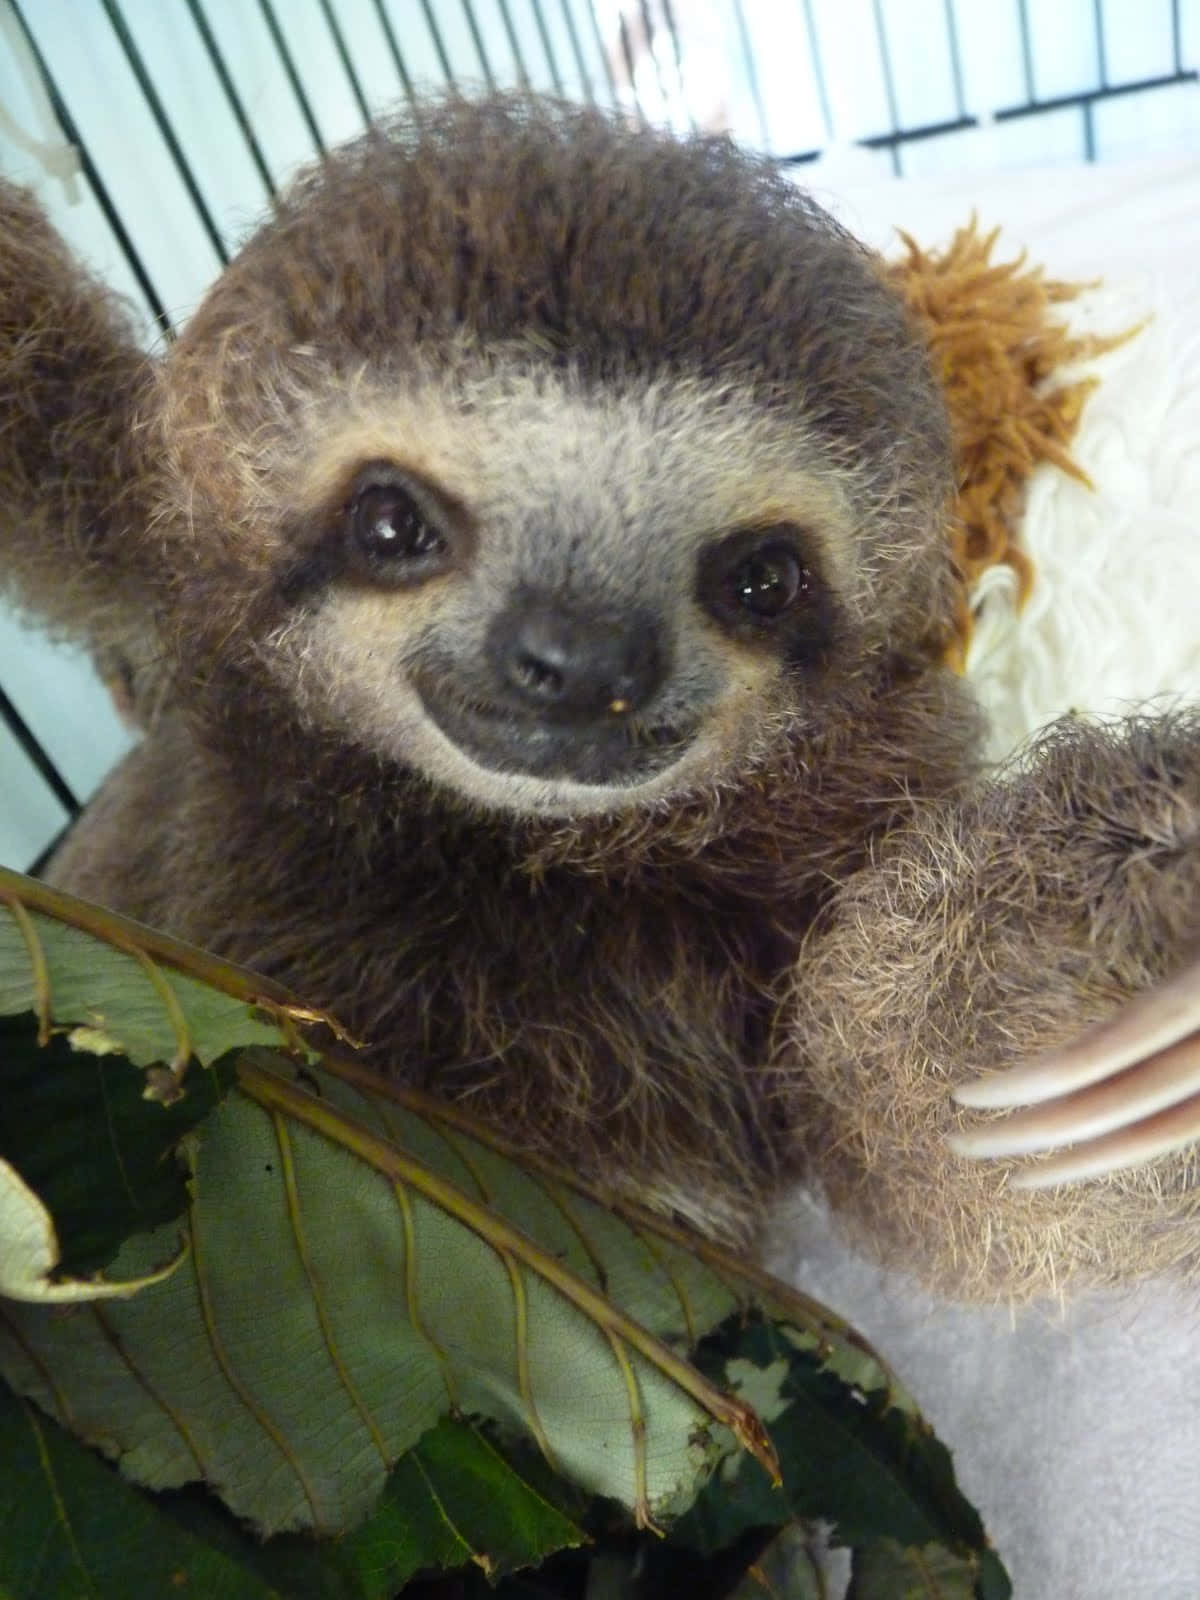 Adorable Baby Sloth Enjoys a Sunny Day